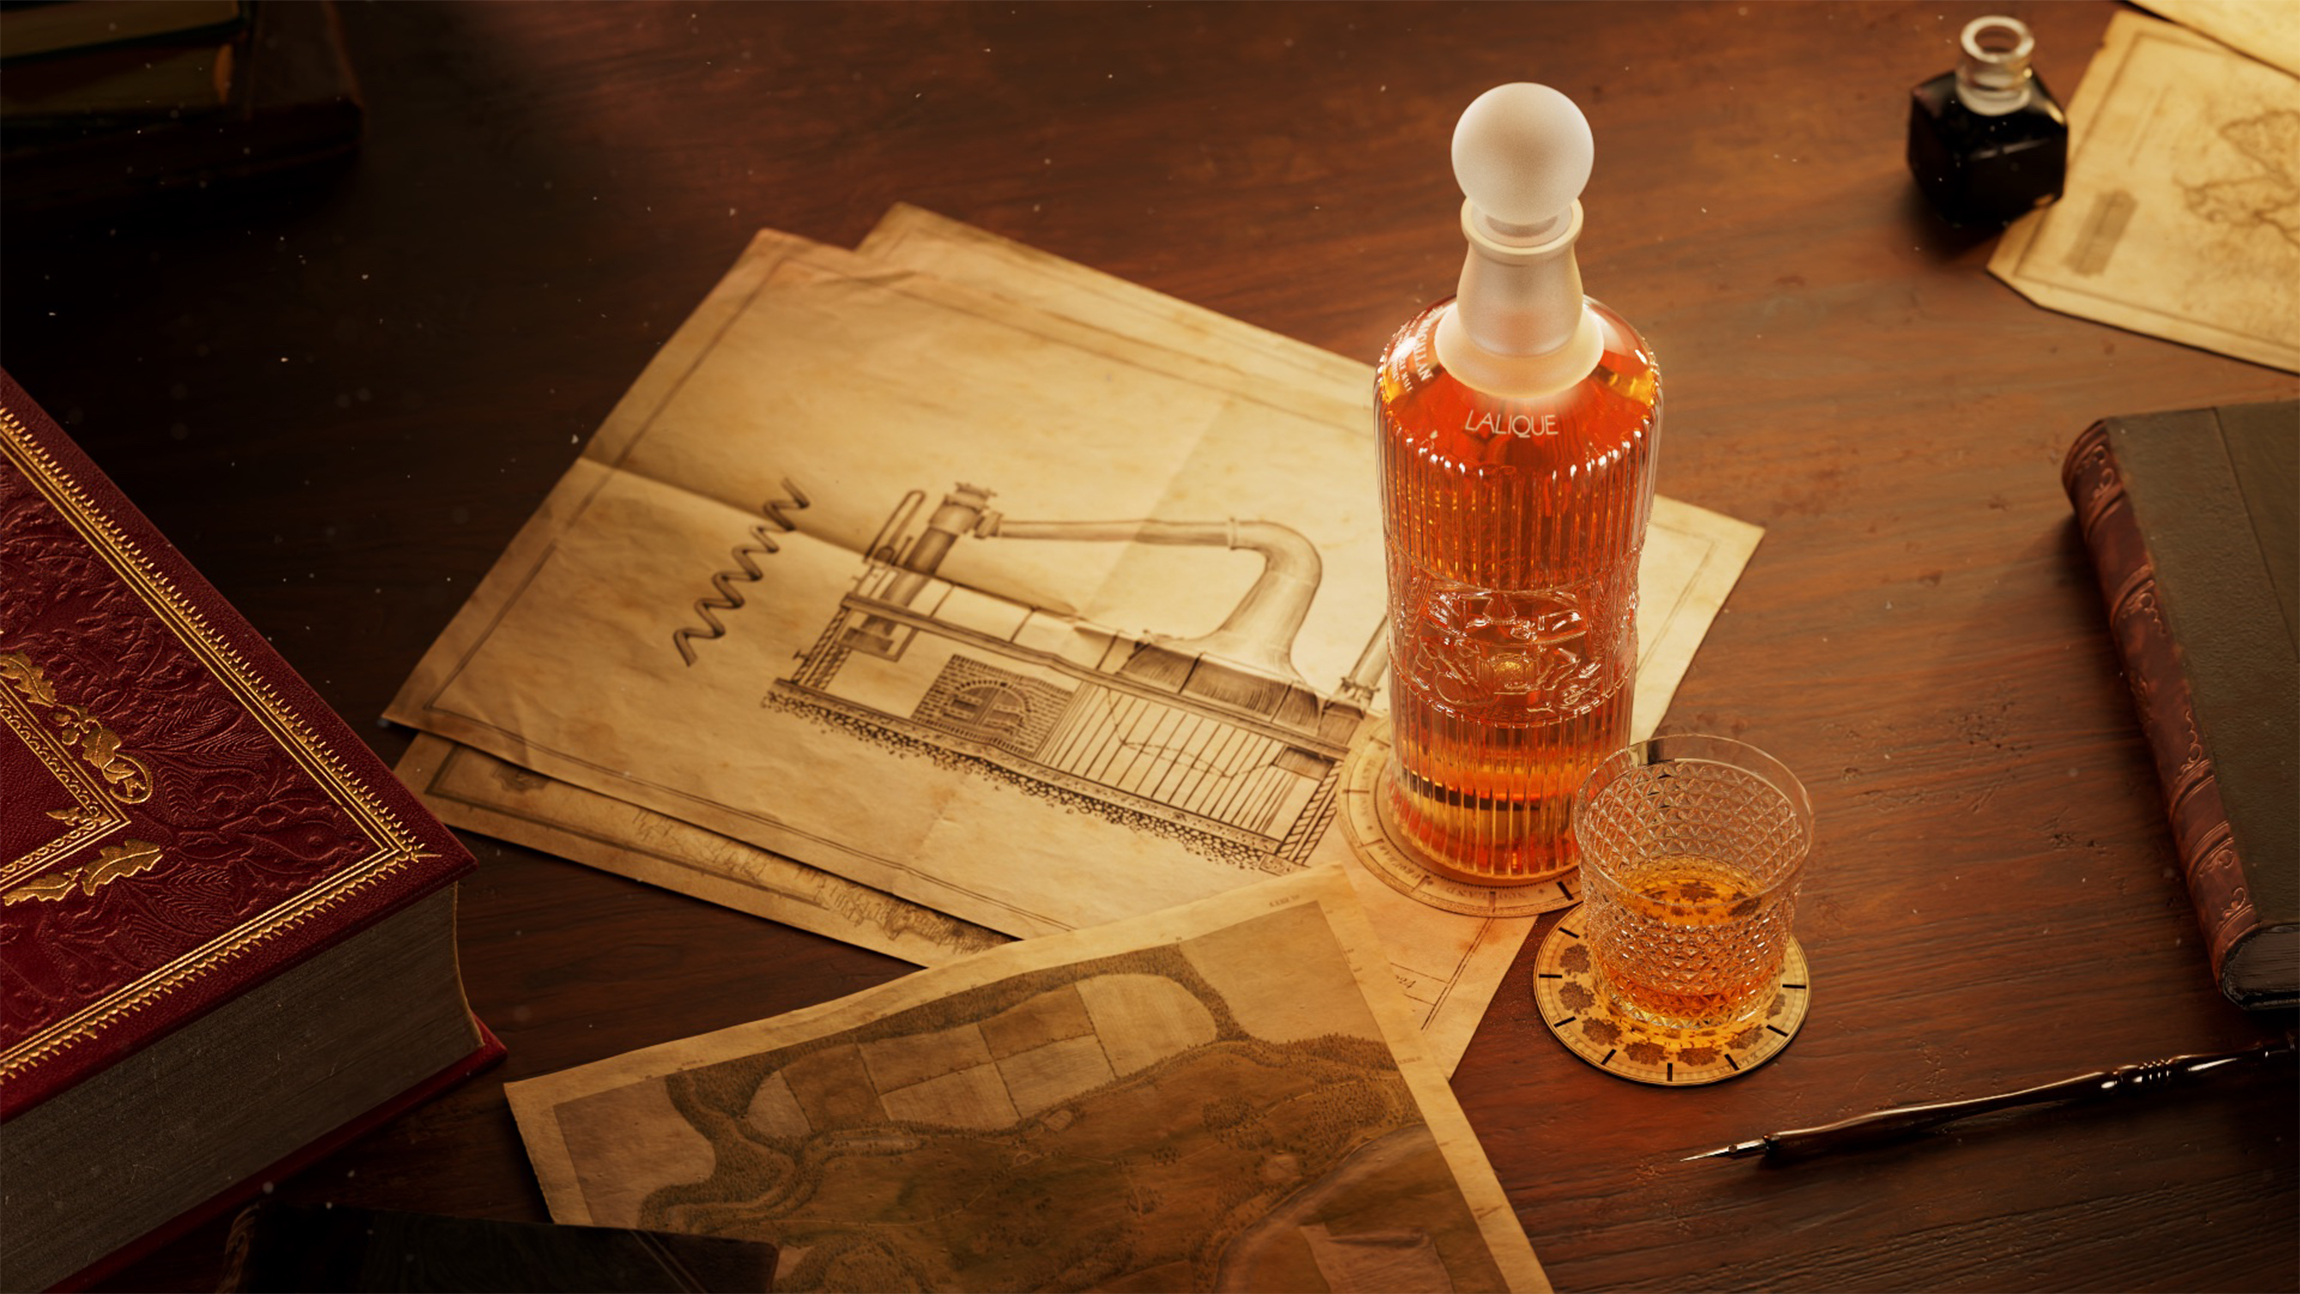 麦卡伦传奇系列第二卷瞩目发布 致敬传奇开创先驱 礼赞匠心制酒传承